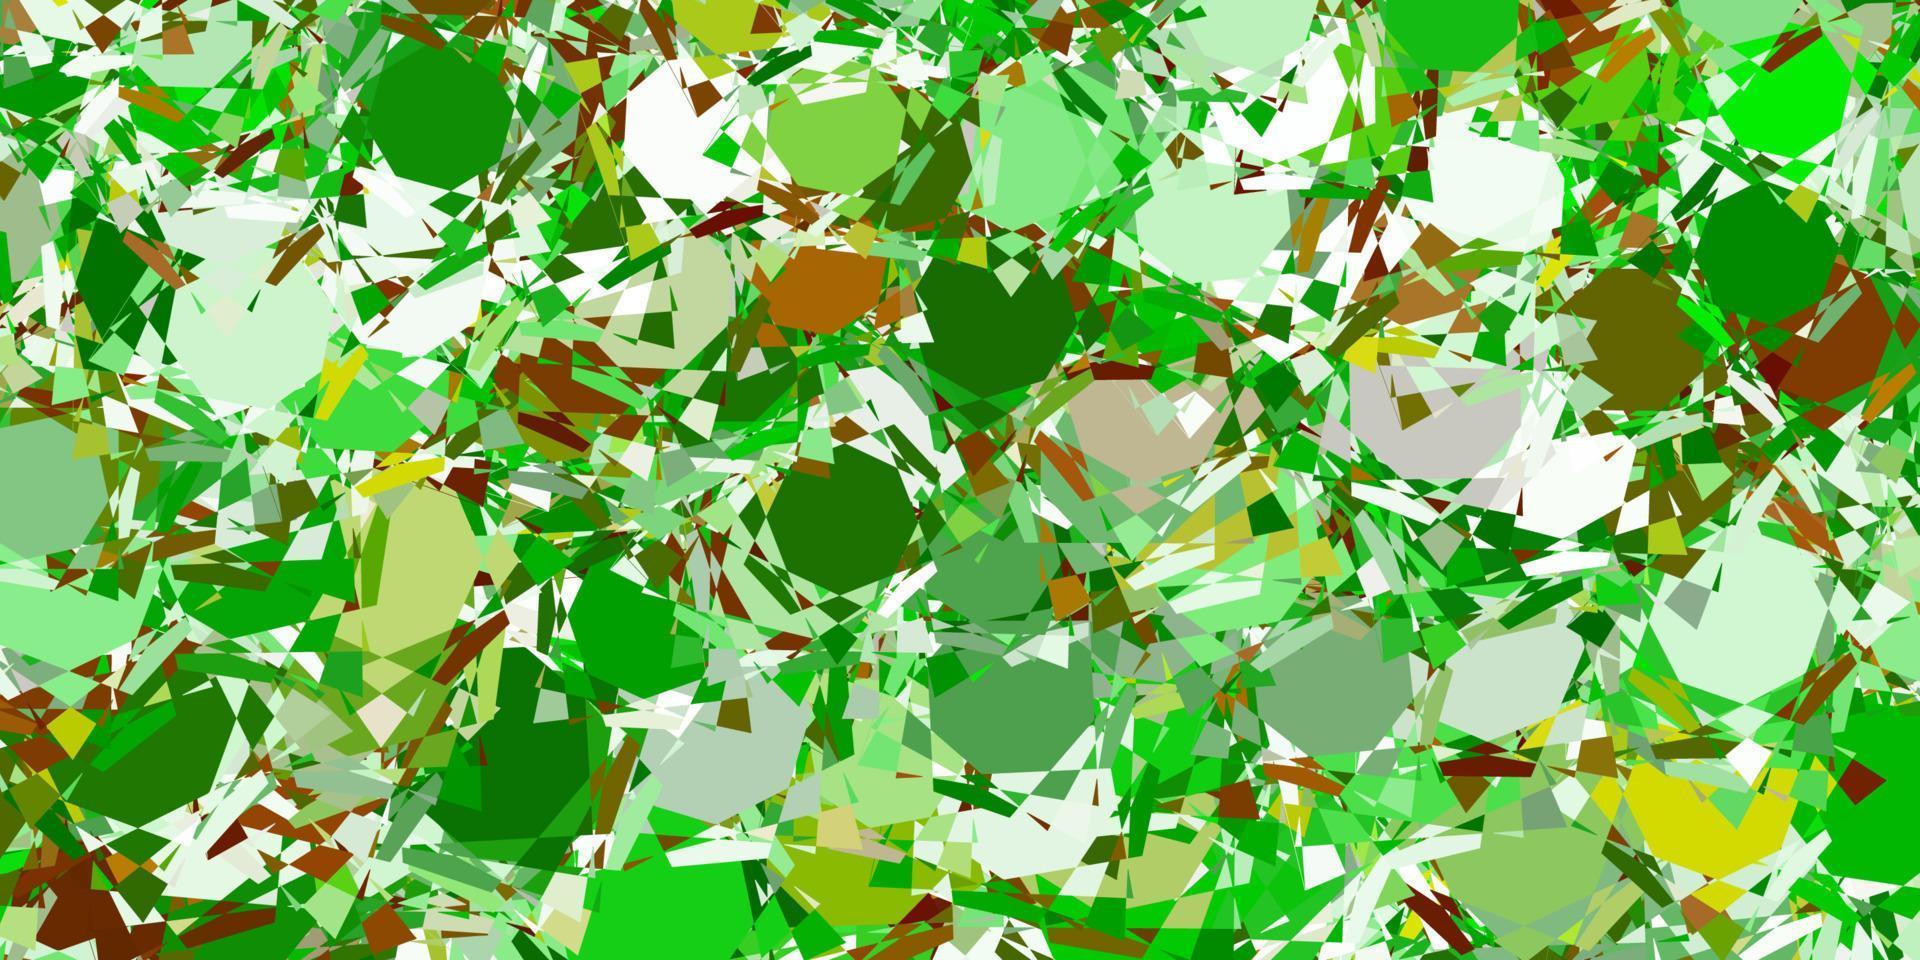 texture de vecteur vert clair avec des triangles aléatoires.